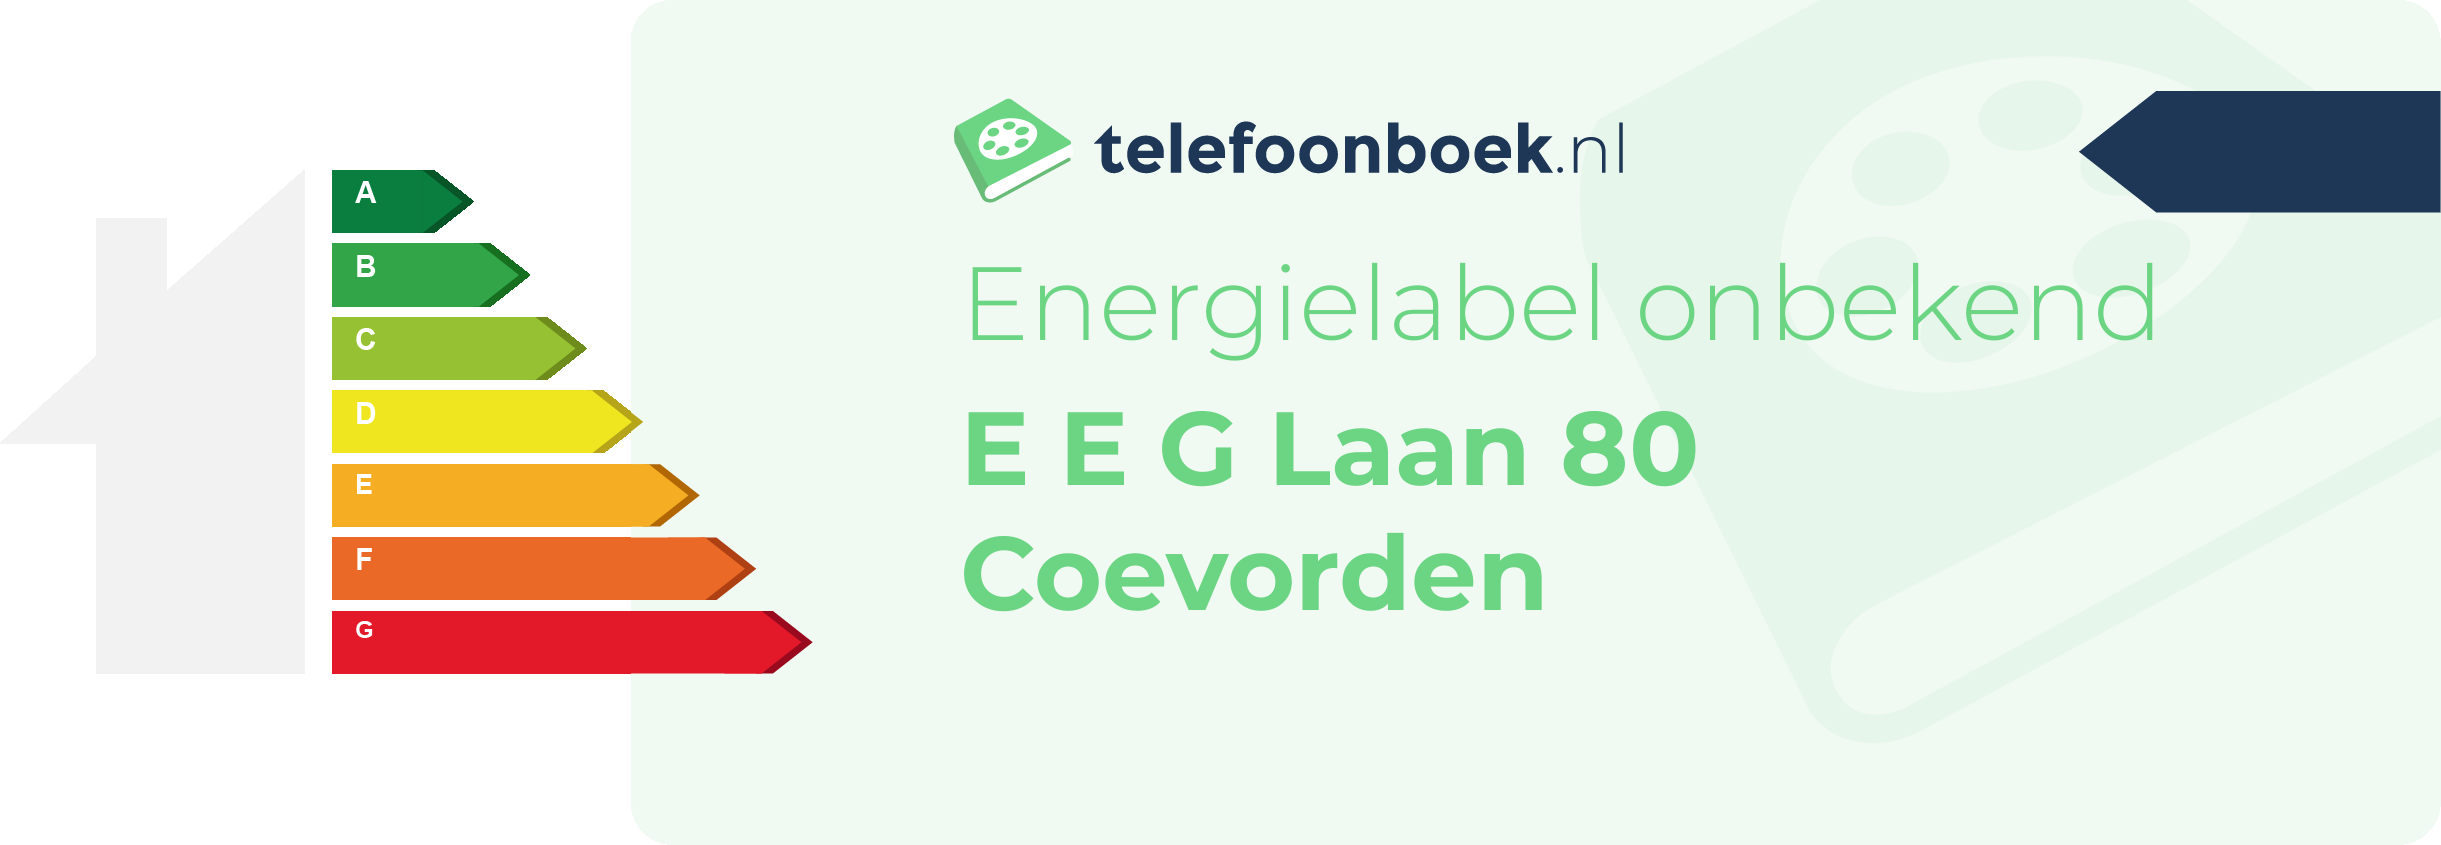 Energielabel E E G Laan 80 Coevorden